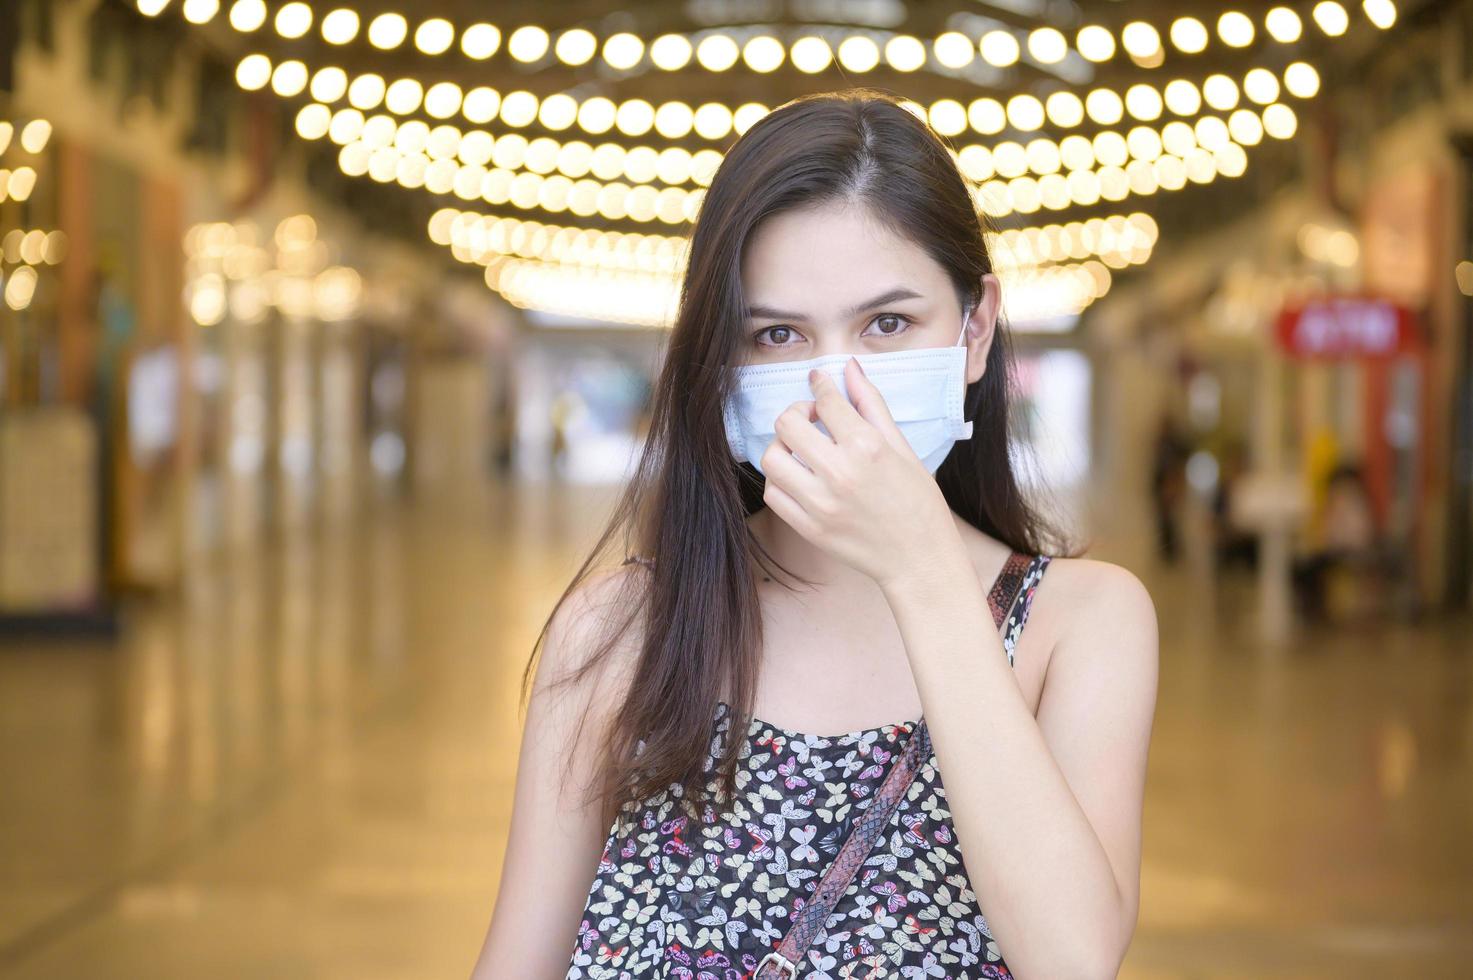 eine junge asiatische frau trägt schutzmaske beim einkaufen im einkaufszentrum, coronavirus-schutz, neues normales lebensstilkonzept foto